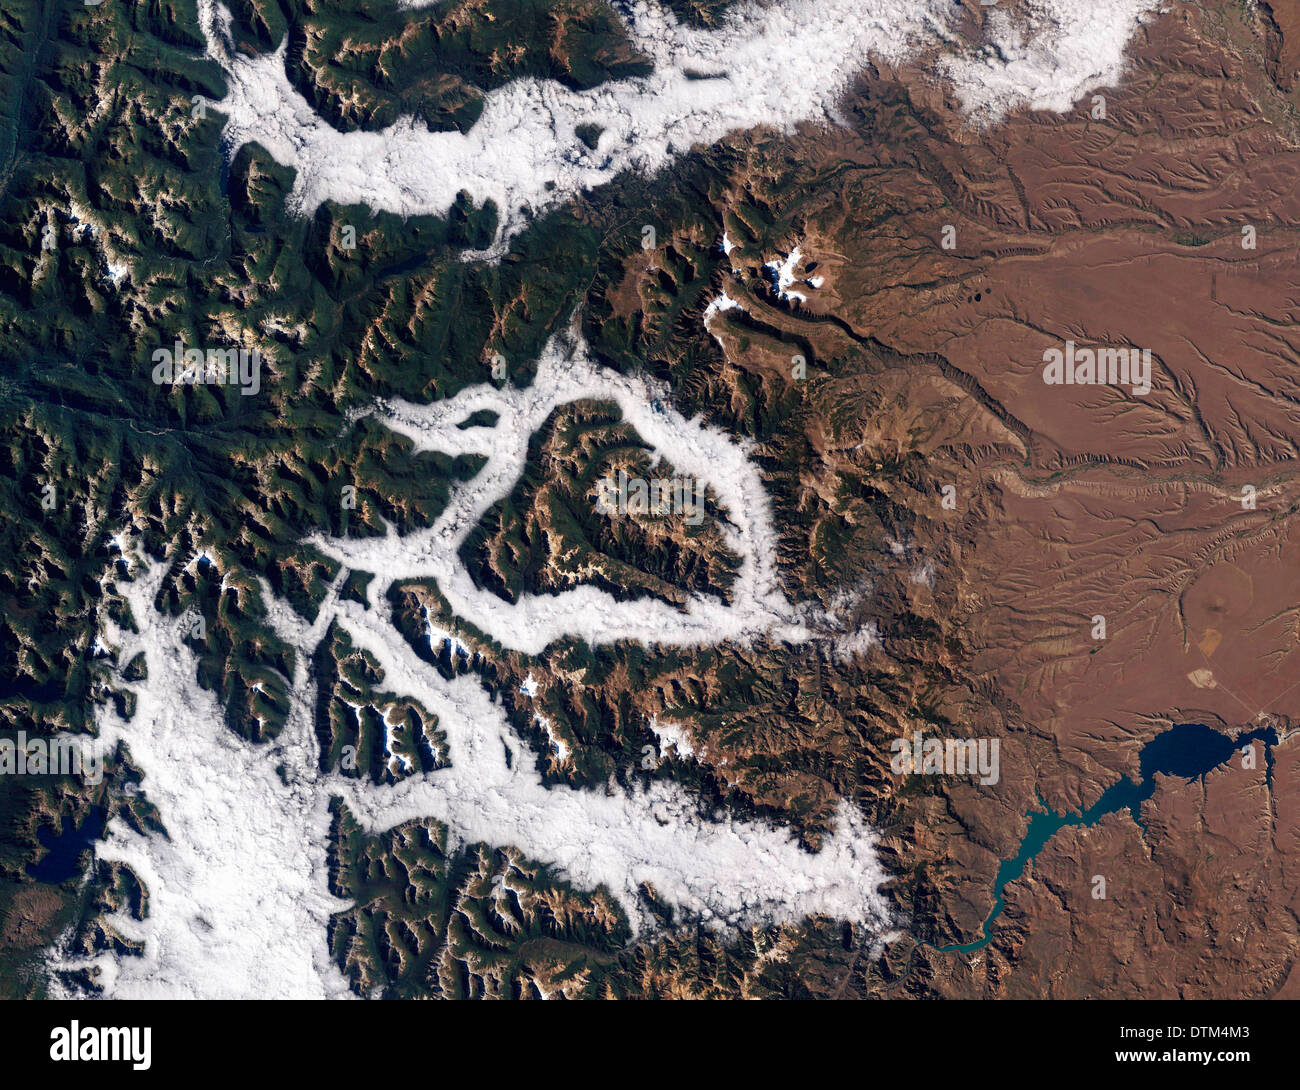 Le brouillard dans l'Argentine du Lake District comme vu par la NASA's Thematic Mapper sur le satellite Landsat 5 Banque D'Images